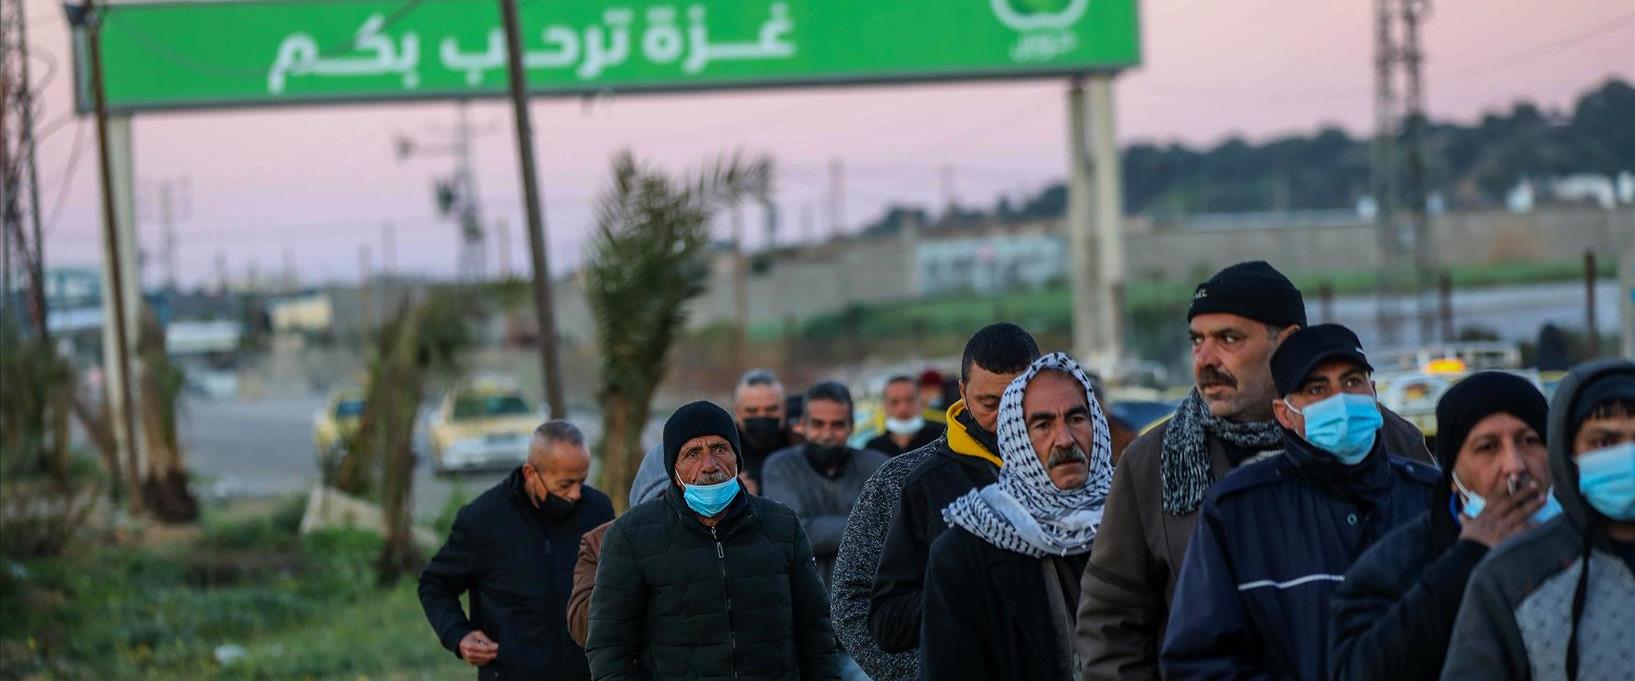 פועלים פלסטינים במעבר ארז, מרץ 2022